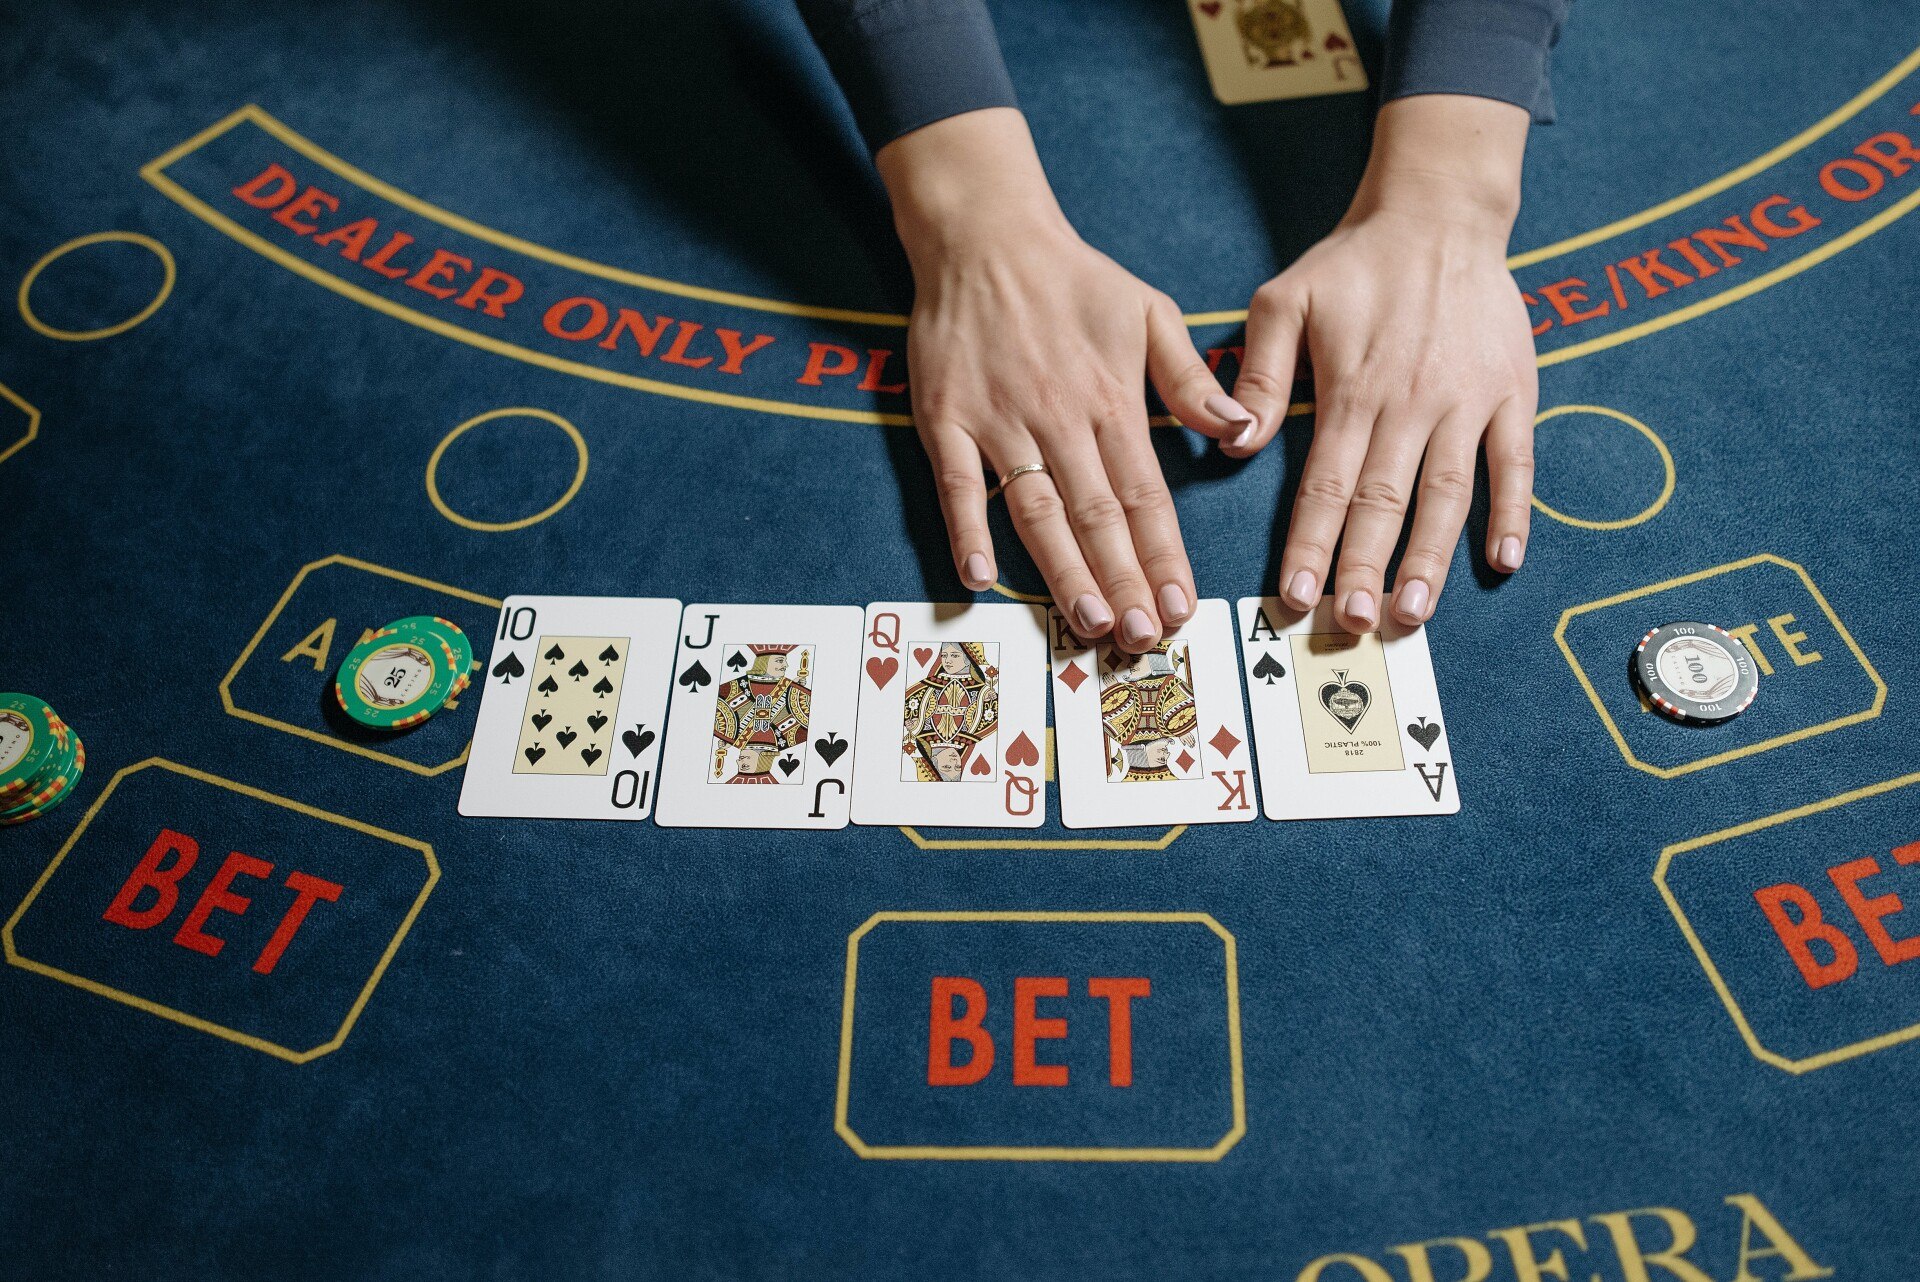 Juega en el casino online con bono y aumenta tus ganancias